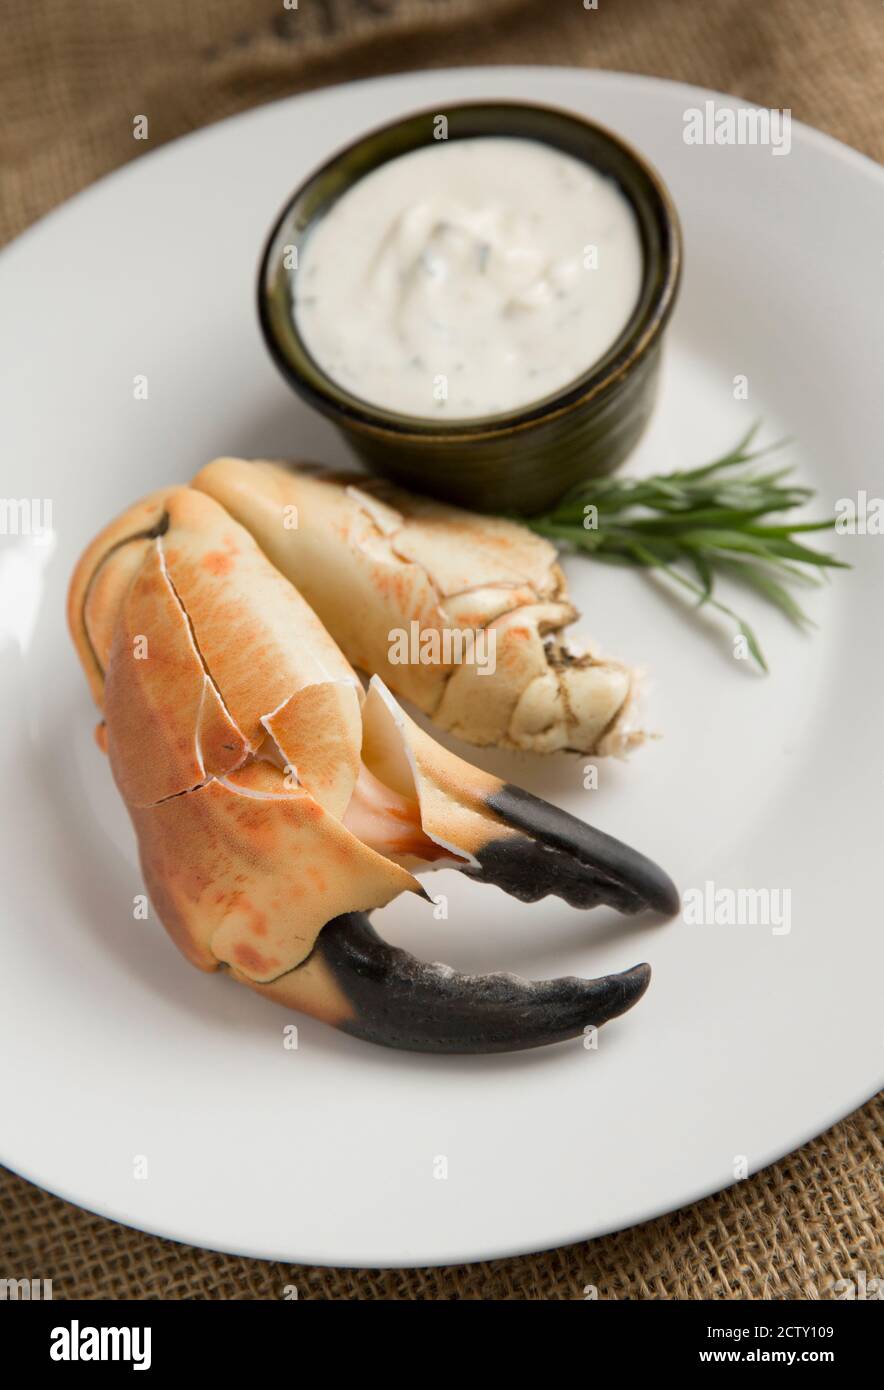 Eine gekochte, rissige Krabbenklaue aus einer braunen Krabbe, Cancer Pagurus, die mit Knoblauch, Estragon und Zitronenmayonnaise serviert wurde. Dorset England GB Stockfoto